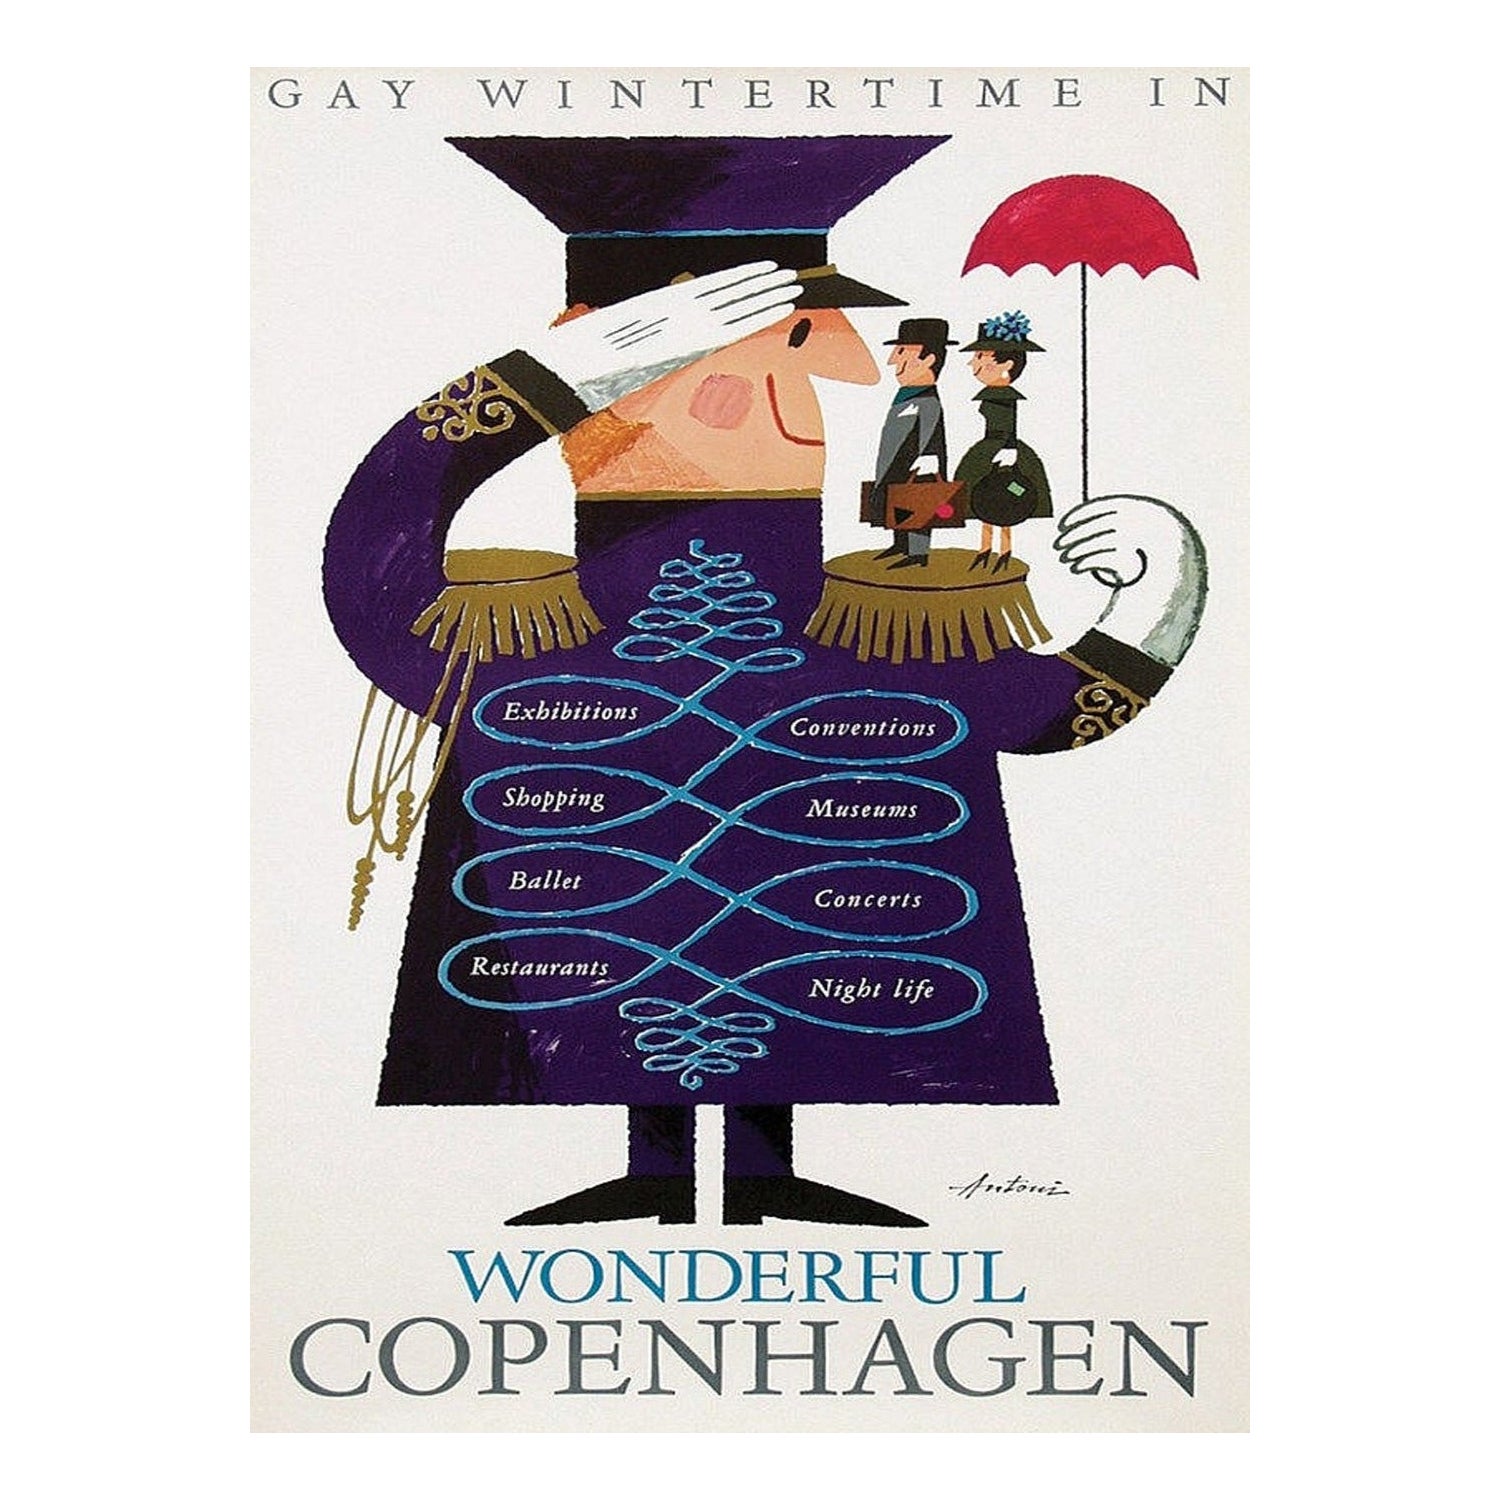 1963 Wonderful Copenhagen Original Vintage Poster